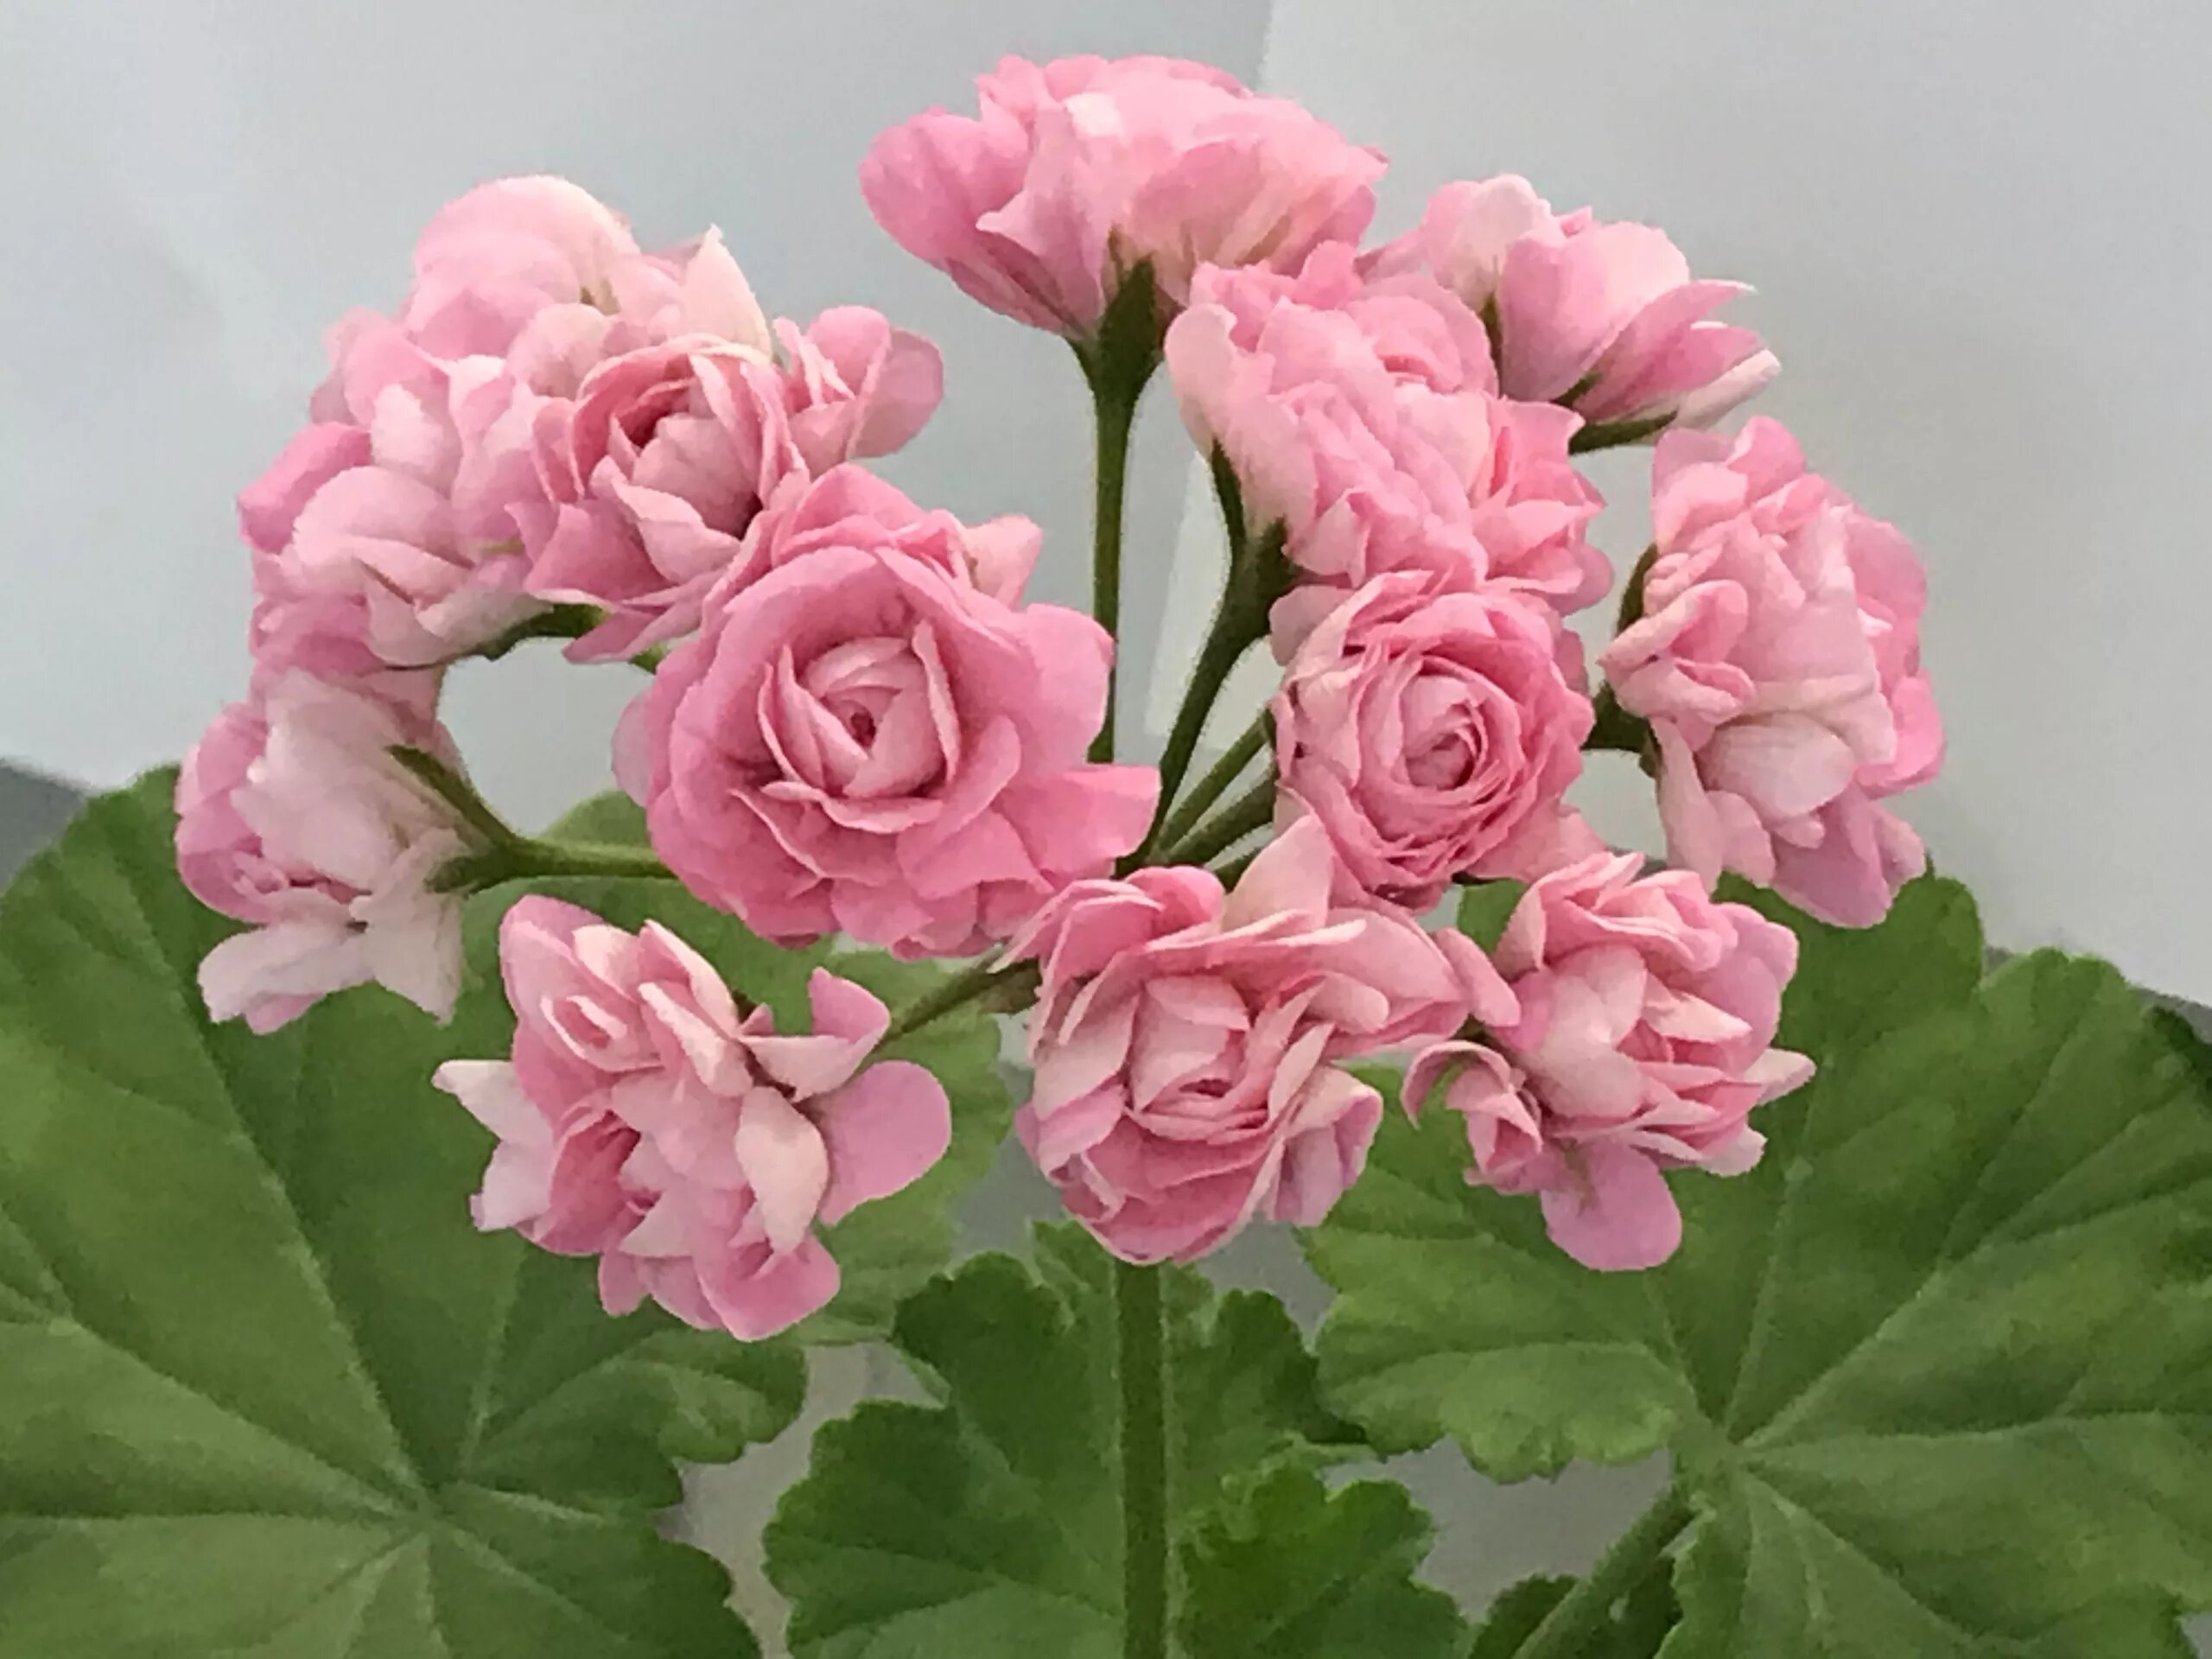 Пеларгония Swanland Pink. Пеларгония (Pelargonium). Shannon Corr пеларгония. Пеларгония Swanland Pink Australien Pink Rosebud. Герань покупка